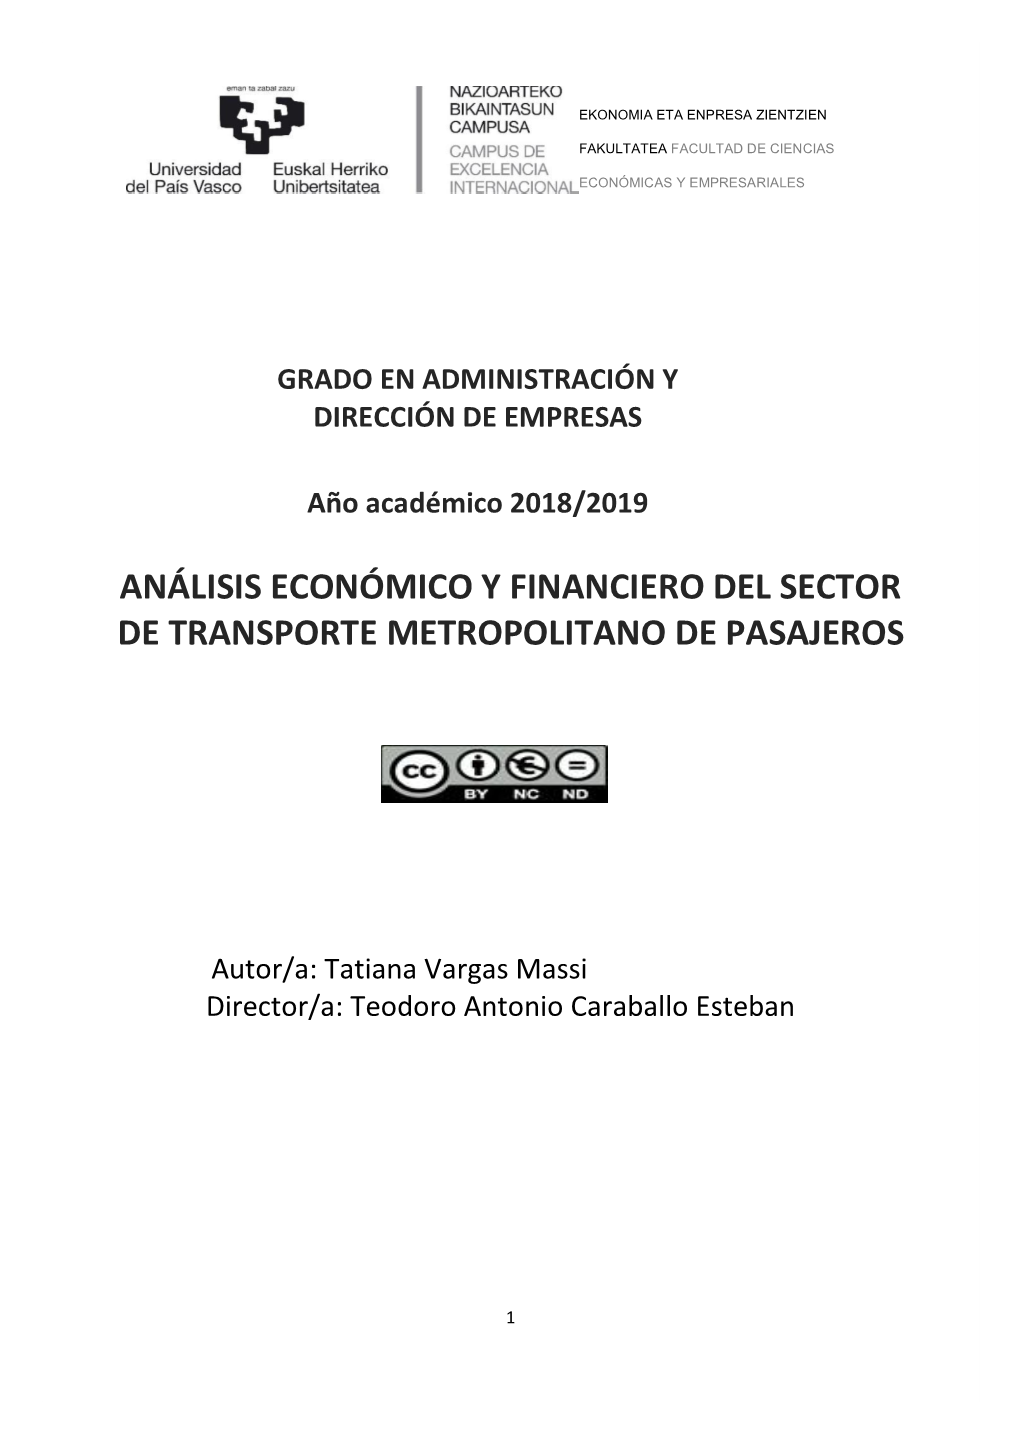 Análisis Económico Y Financiero Del Sector De Transporte Metropolitano De Pasajeros